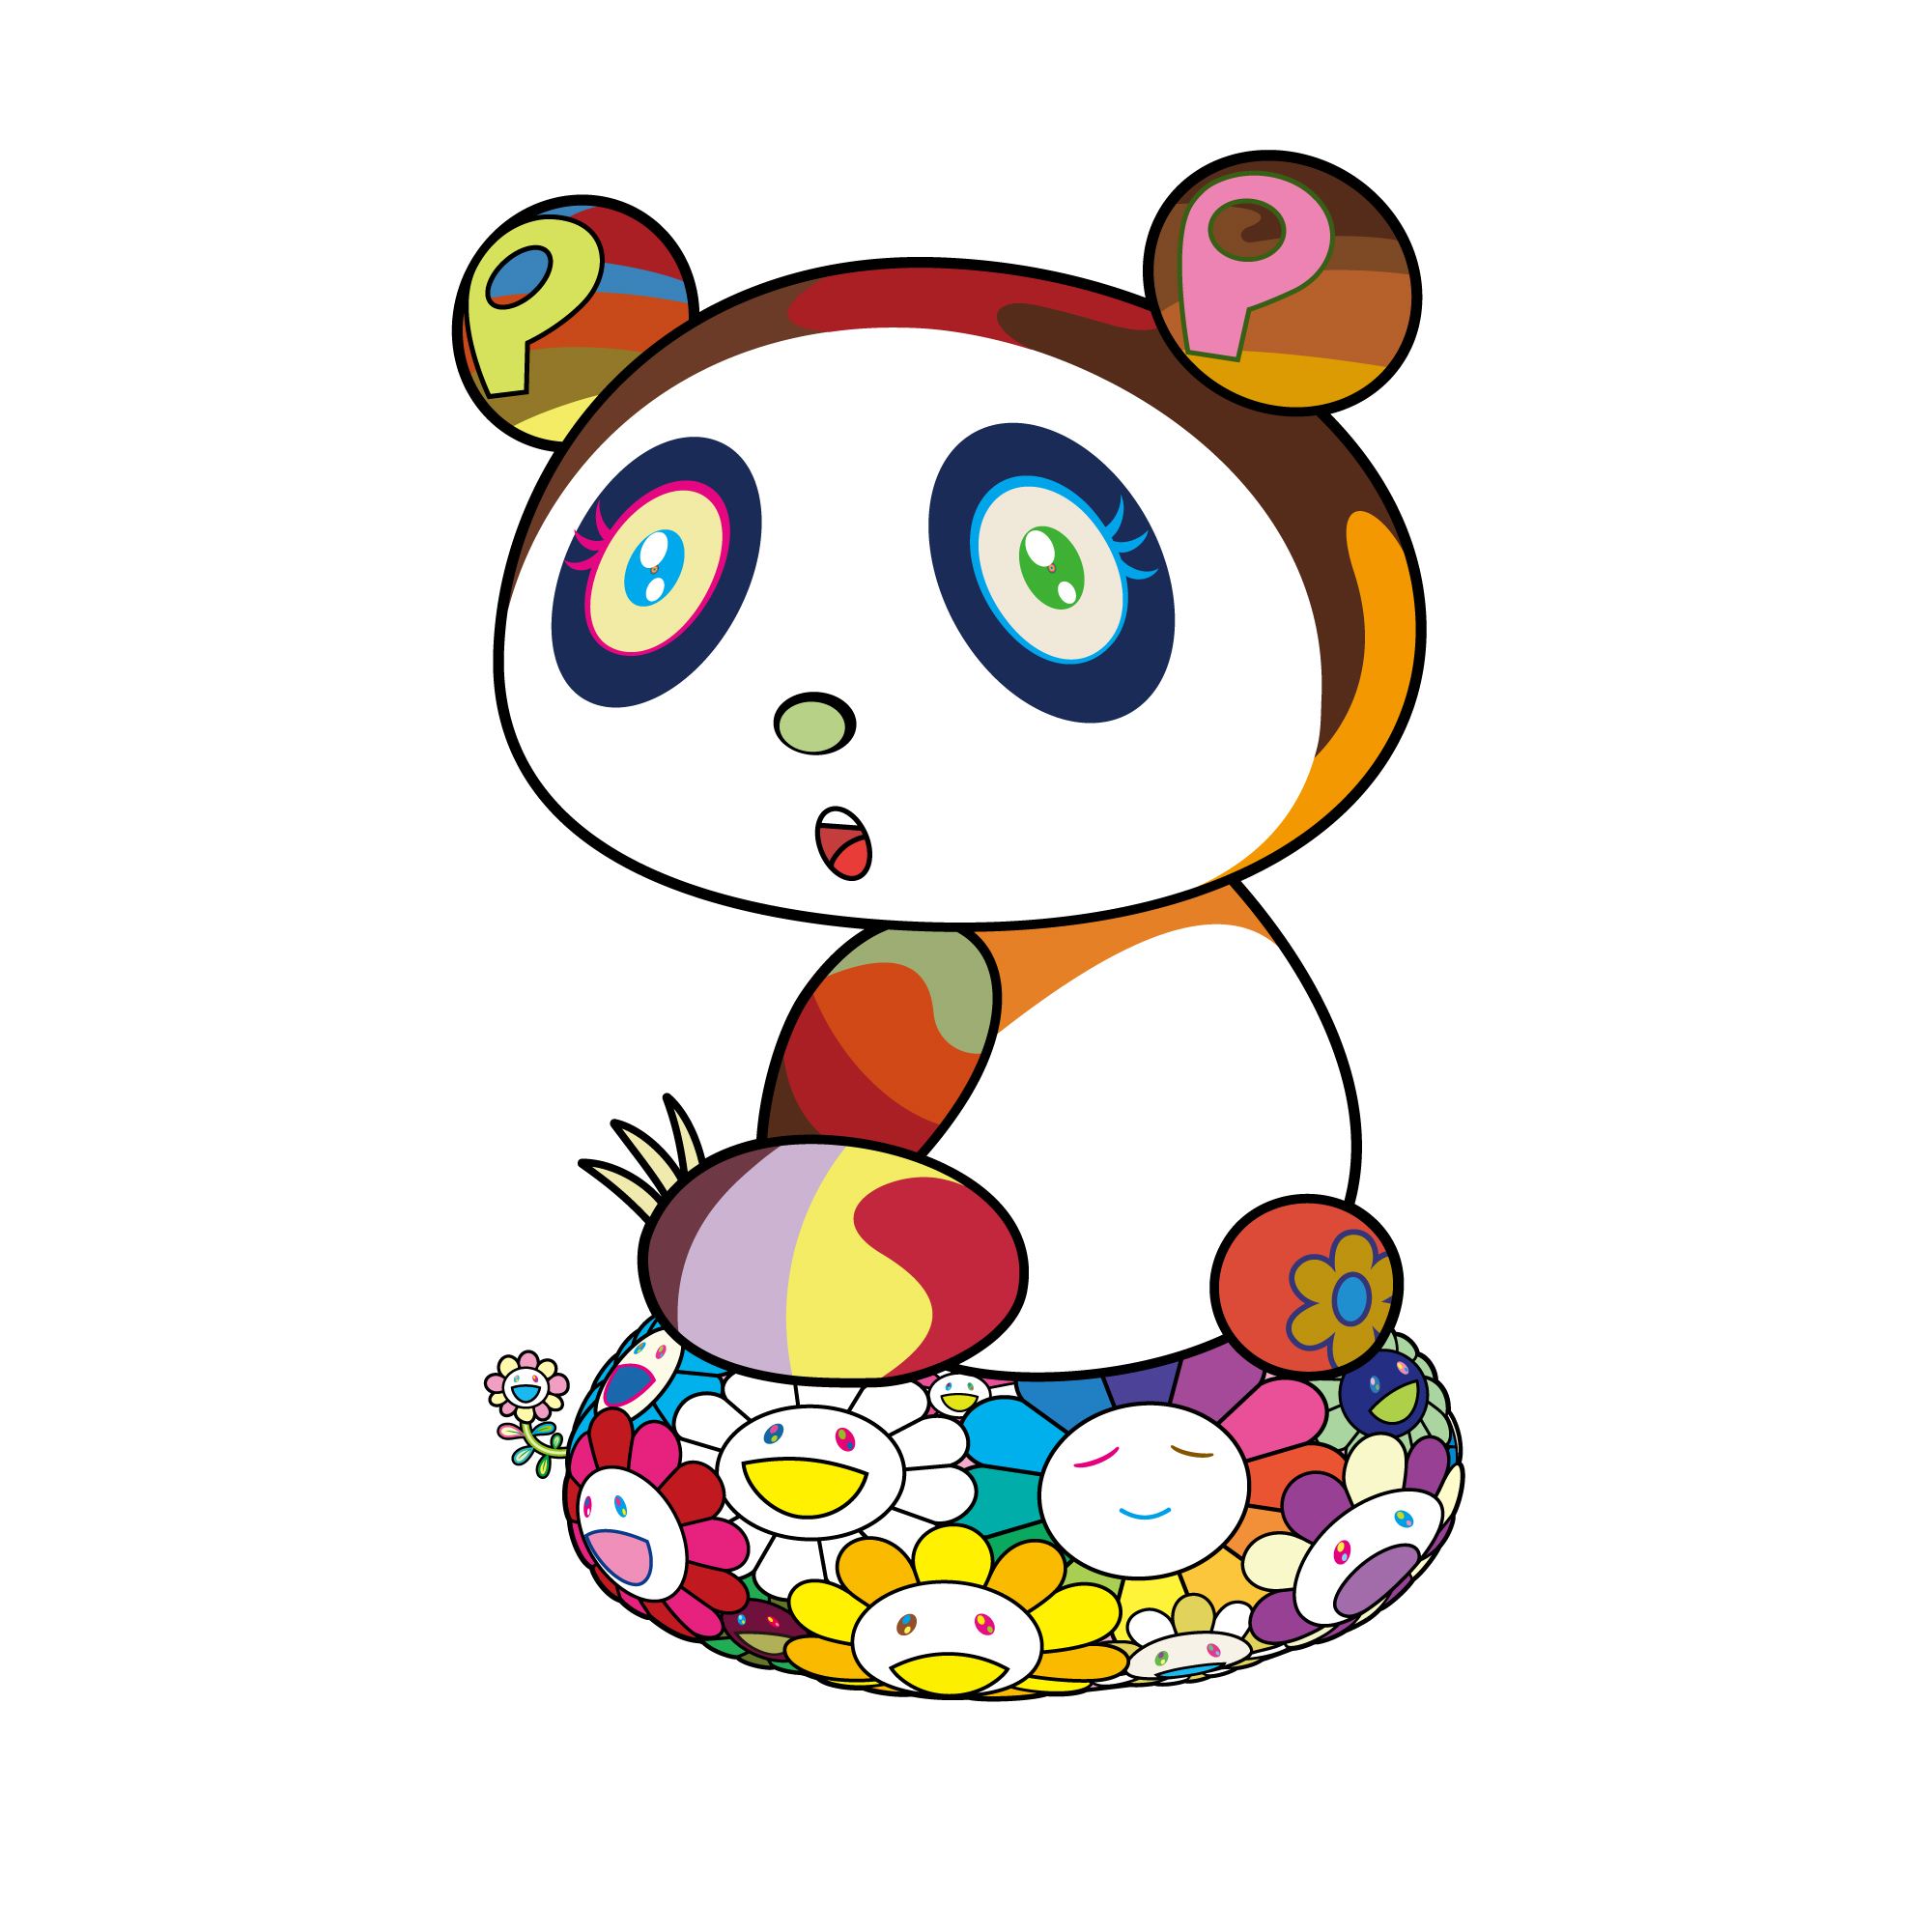 8月20日(木)10時より、WEBショップにて村上隆の新作パンダ版画「パンダ 